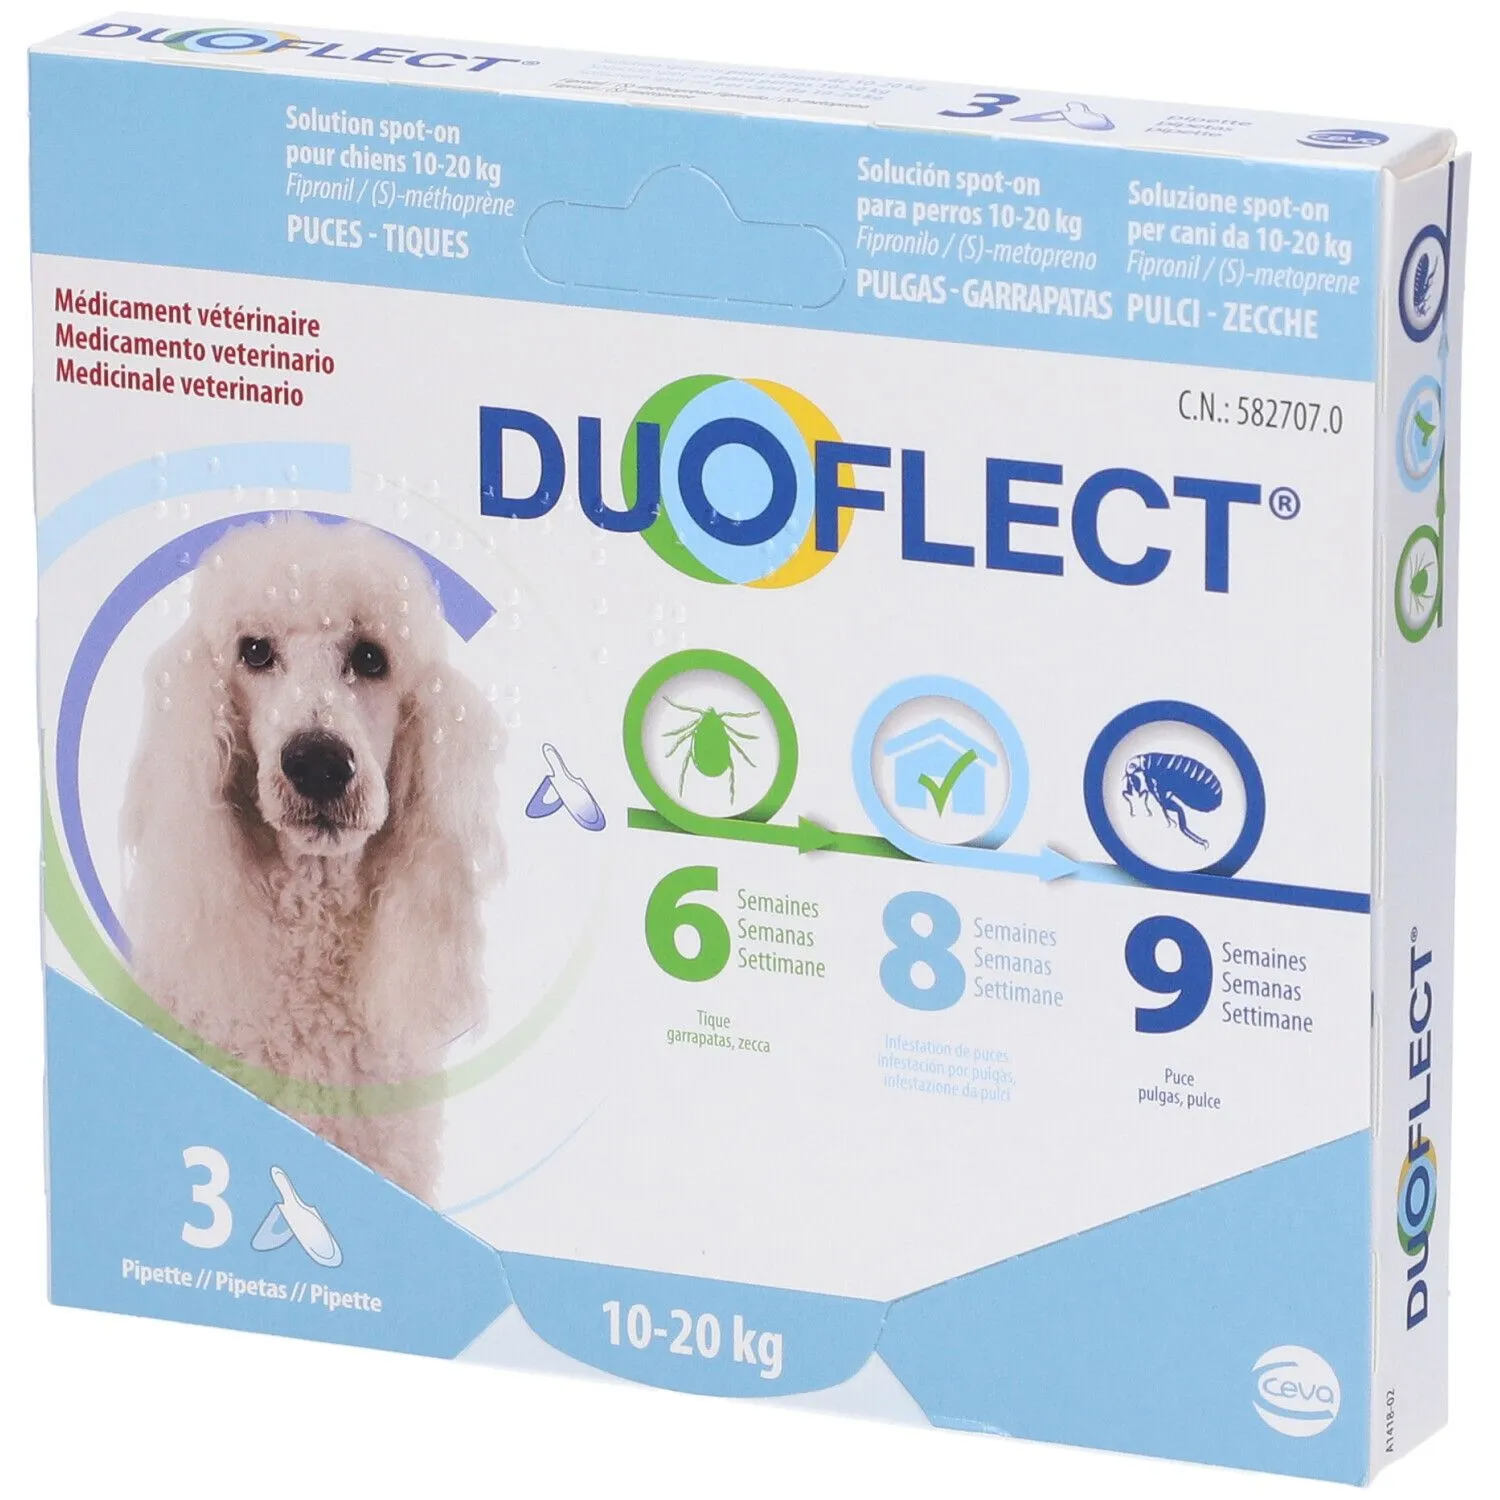 Duoflect Soluzione Spot-on Per Cani Da 10-20 Kg